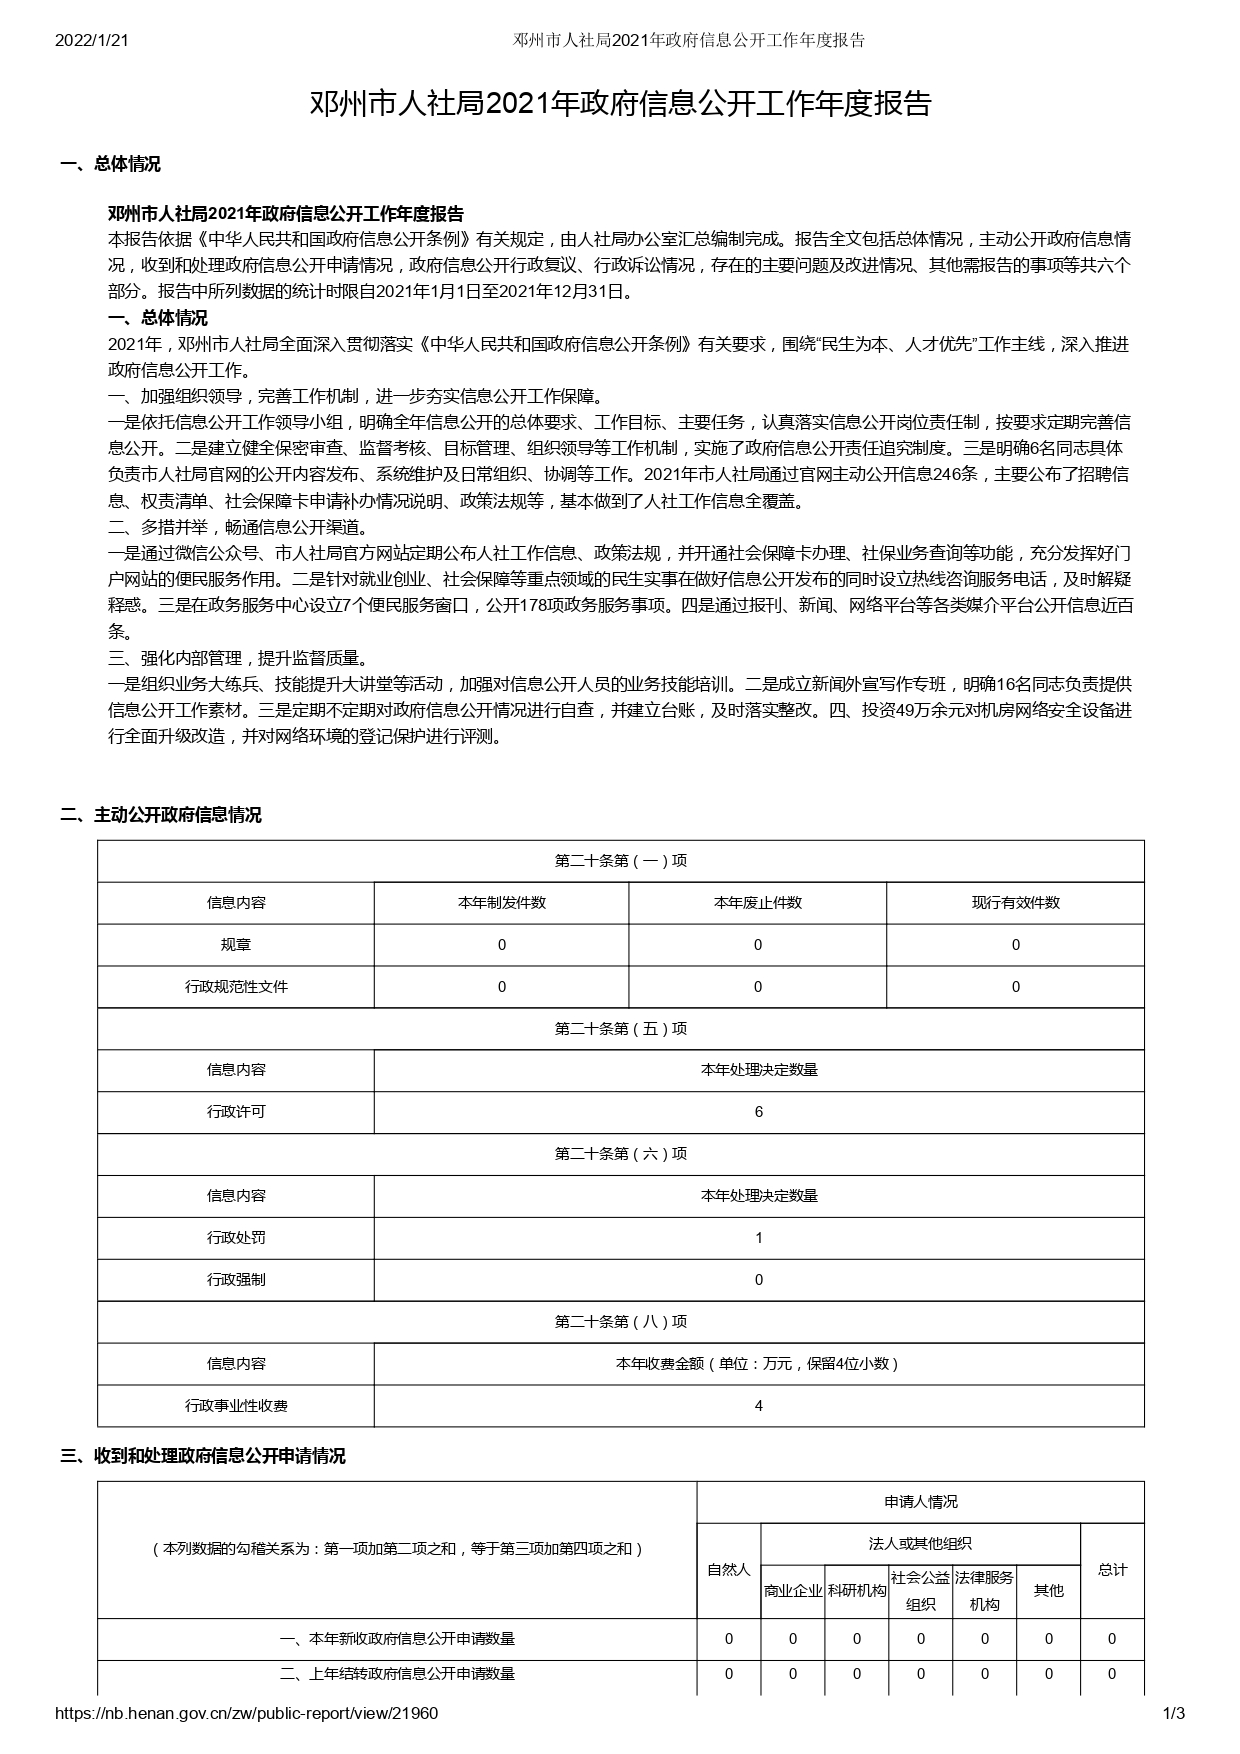 邓州市人社局2021年政府信息公开工作年度报告_page-0001.jpg